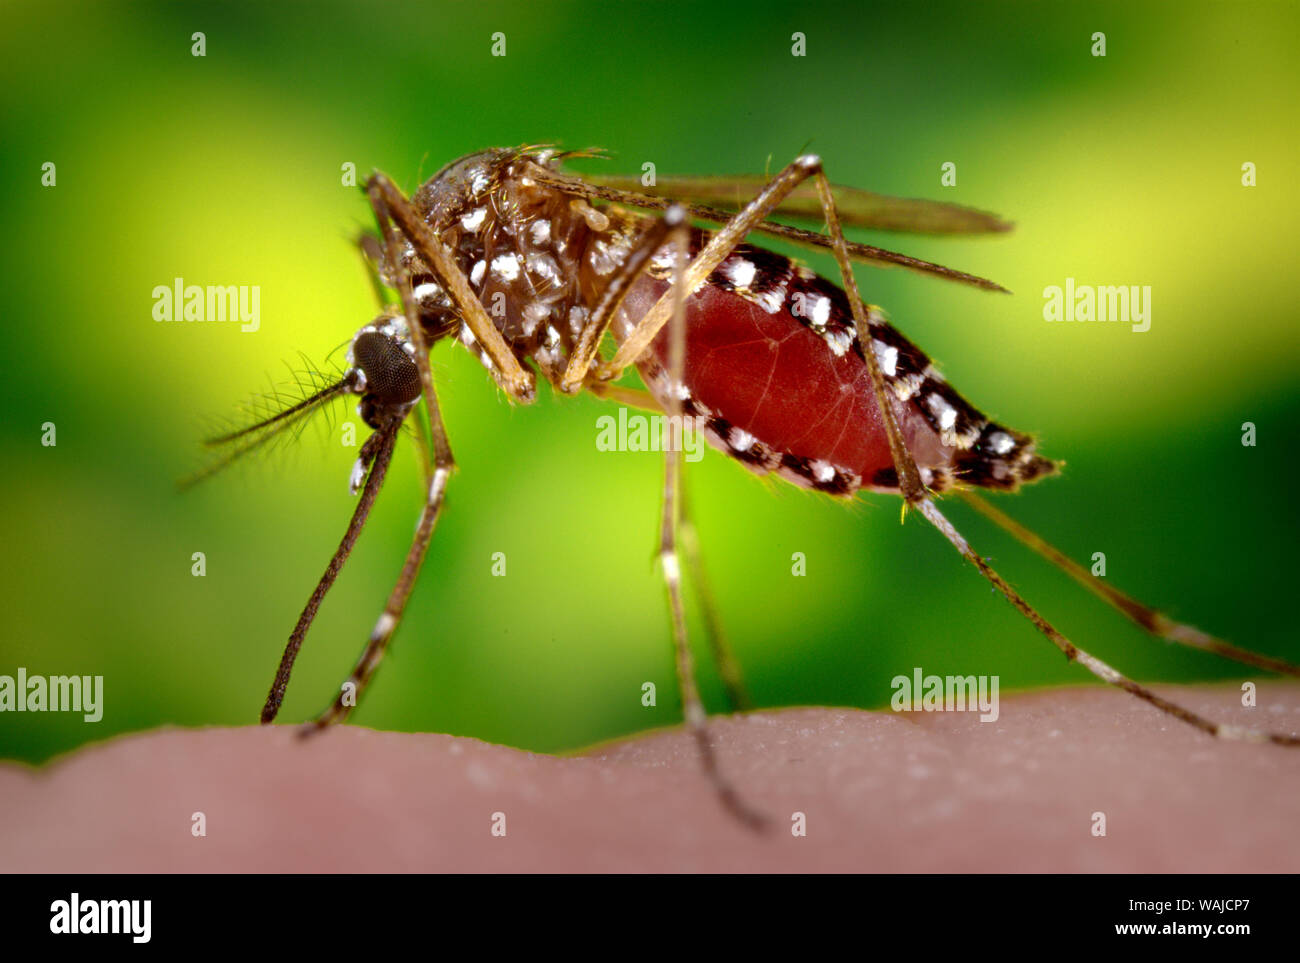 Dieses Foto zeigt einen weiblichen Aedes aegypti, wie sie in den Prozess der Erlangung einer 'Blutmehl', der normalerweise aus einem ahnungslosen Host. Beachten Sie, dass diese Mücke war Fütterung, seine Mahlzeit war das Sammeln in ihren gewölbten Bauch, durch die rote Färbung sichtbar durch die Dehnung, durchscheinend exoskeletal Abdominal- außen belegt. Als primäre Vektor für die Übertragung der Flavivirus Dengue und Dengue hämorrhagischen Fiebers, der Tag - beißende Aedes aegypti bevorzugt auf seine menschlichen Wirte zu füttern. Stockfoto